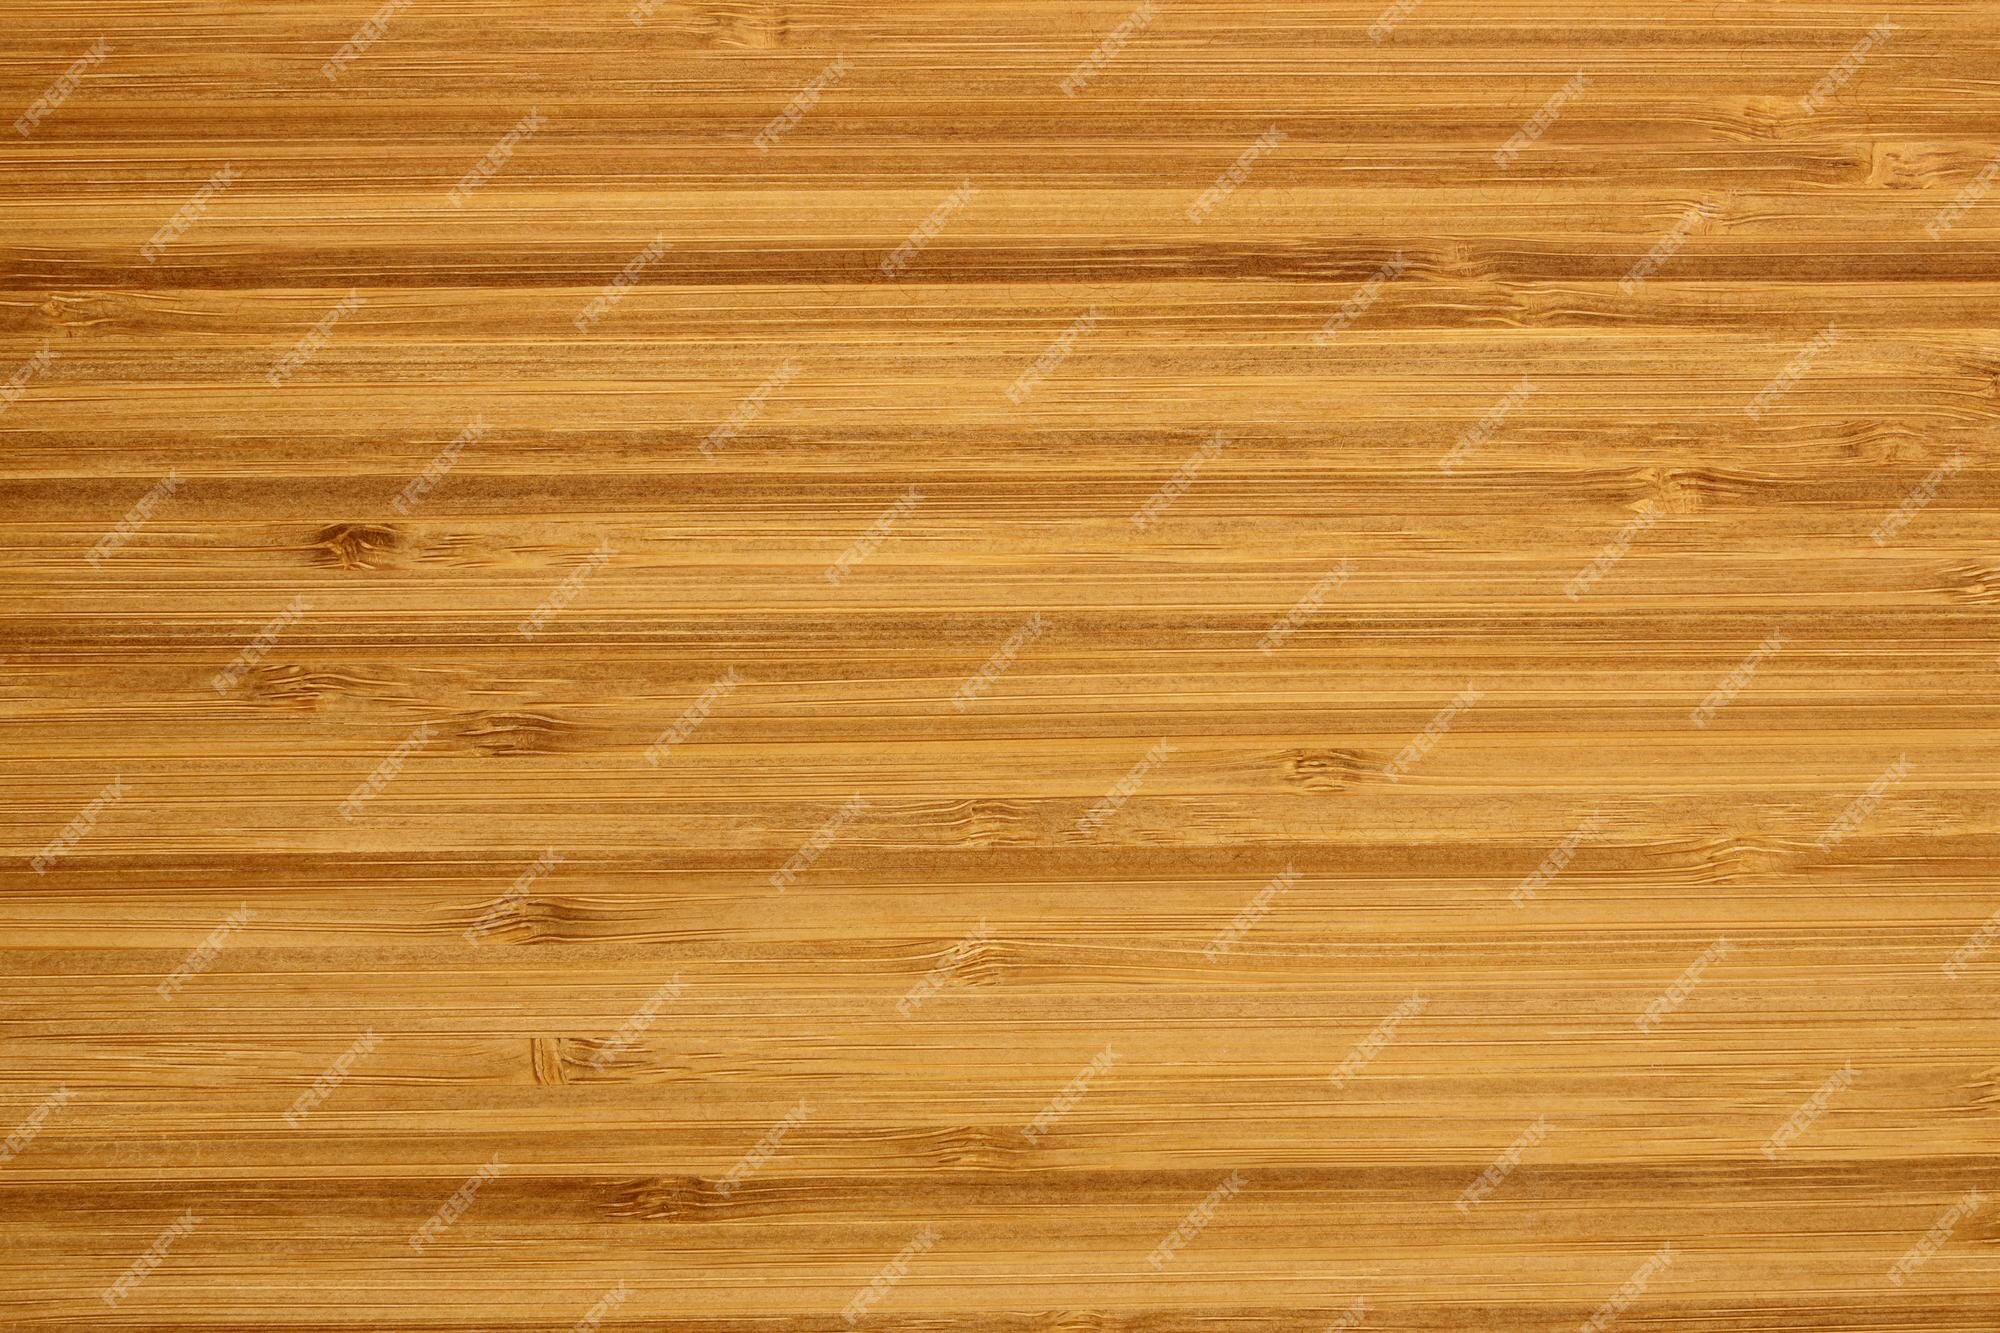 Fond De Bambou Plante De Bambou De Texture En Bois Sur Le Mur Décoratif